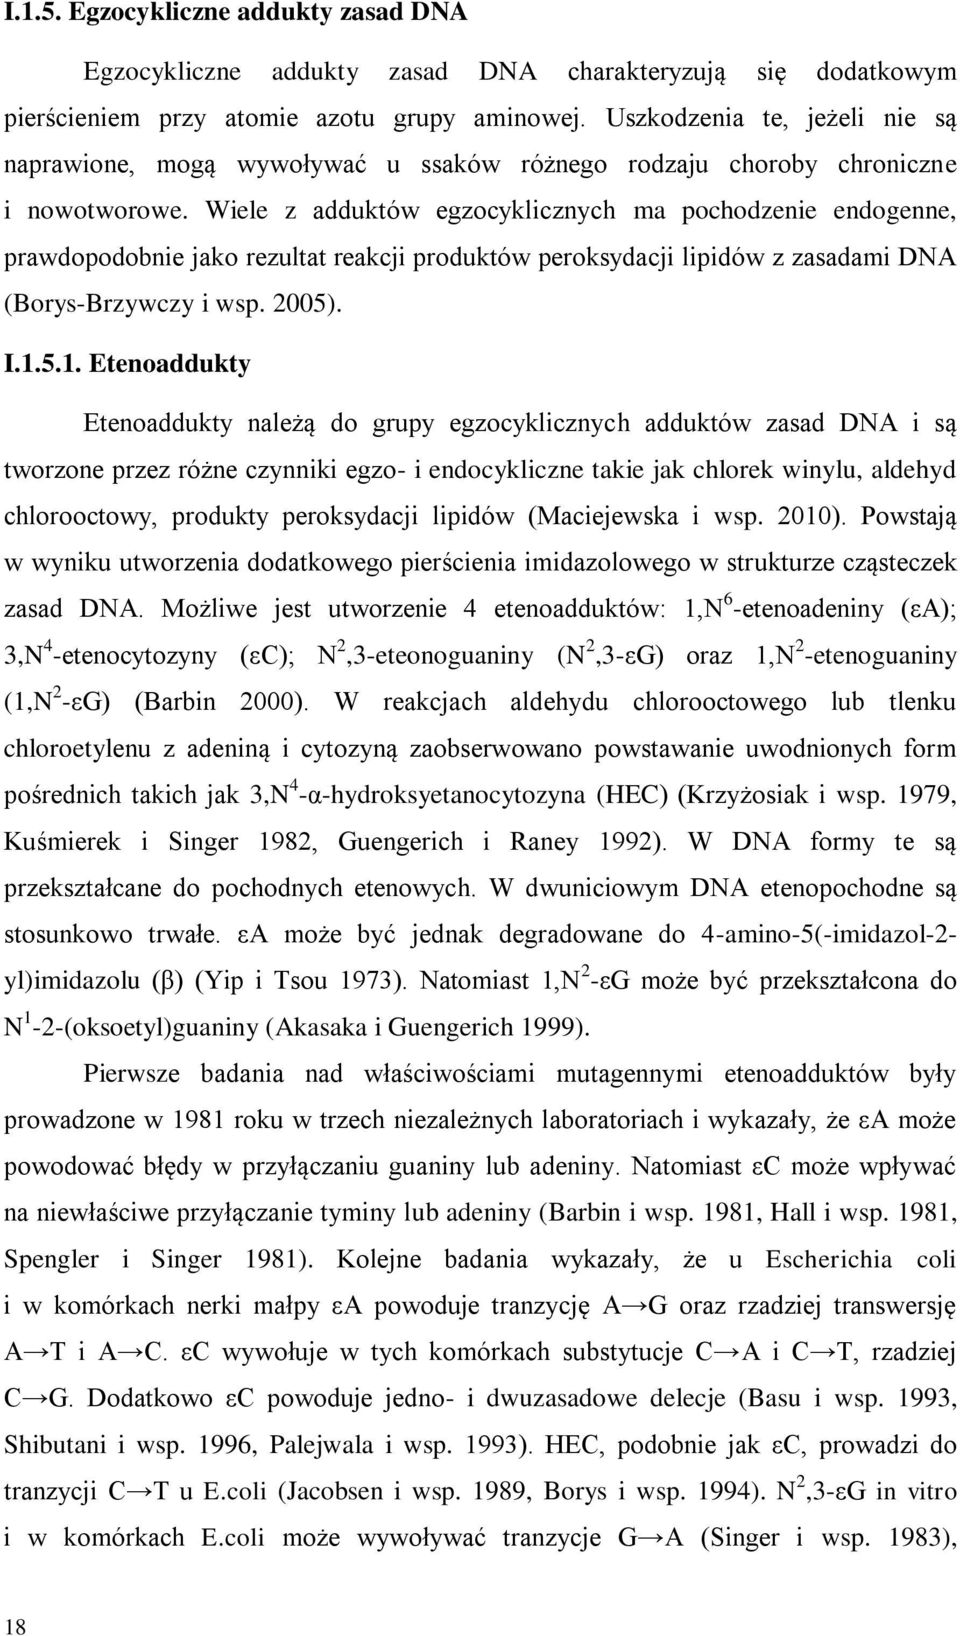 Wiele z adduktów egzocyklicznych ma pochodzenie endogenne, prawdopodobnie jako rezultat reakcji produktów peroksydacji lipidów z zasadami DNA (Borys-Brzywczy i wsp. 2005). I.1.